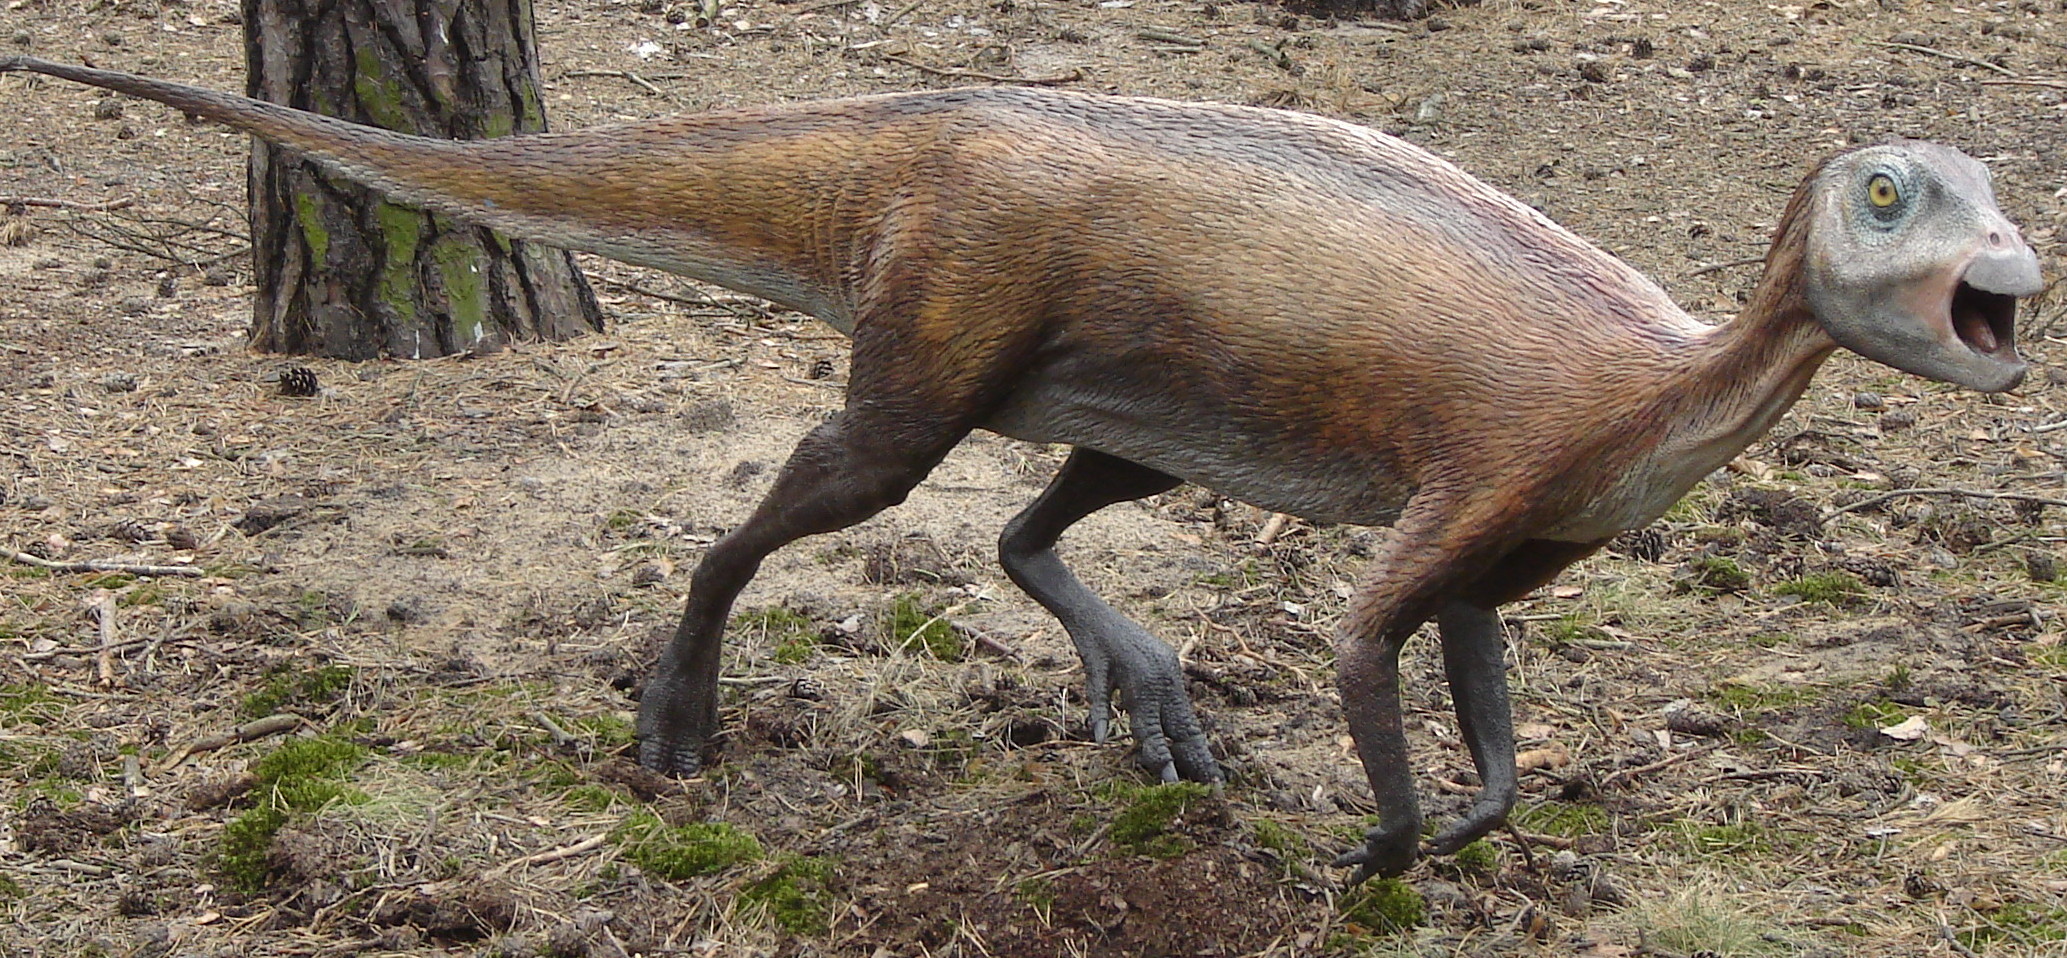 Model malého ornitopodního dinosaura z kladu Iguanodontia, formálně popsaného roku 1989, a pojmenovaného Atlascopcosaurus loadsi. Tento malý býložravec obýval území současné jihovýchodní Austrálie v době před 114 miliony let a jeho fosilie byly objev